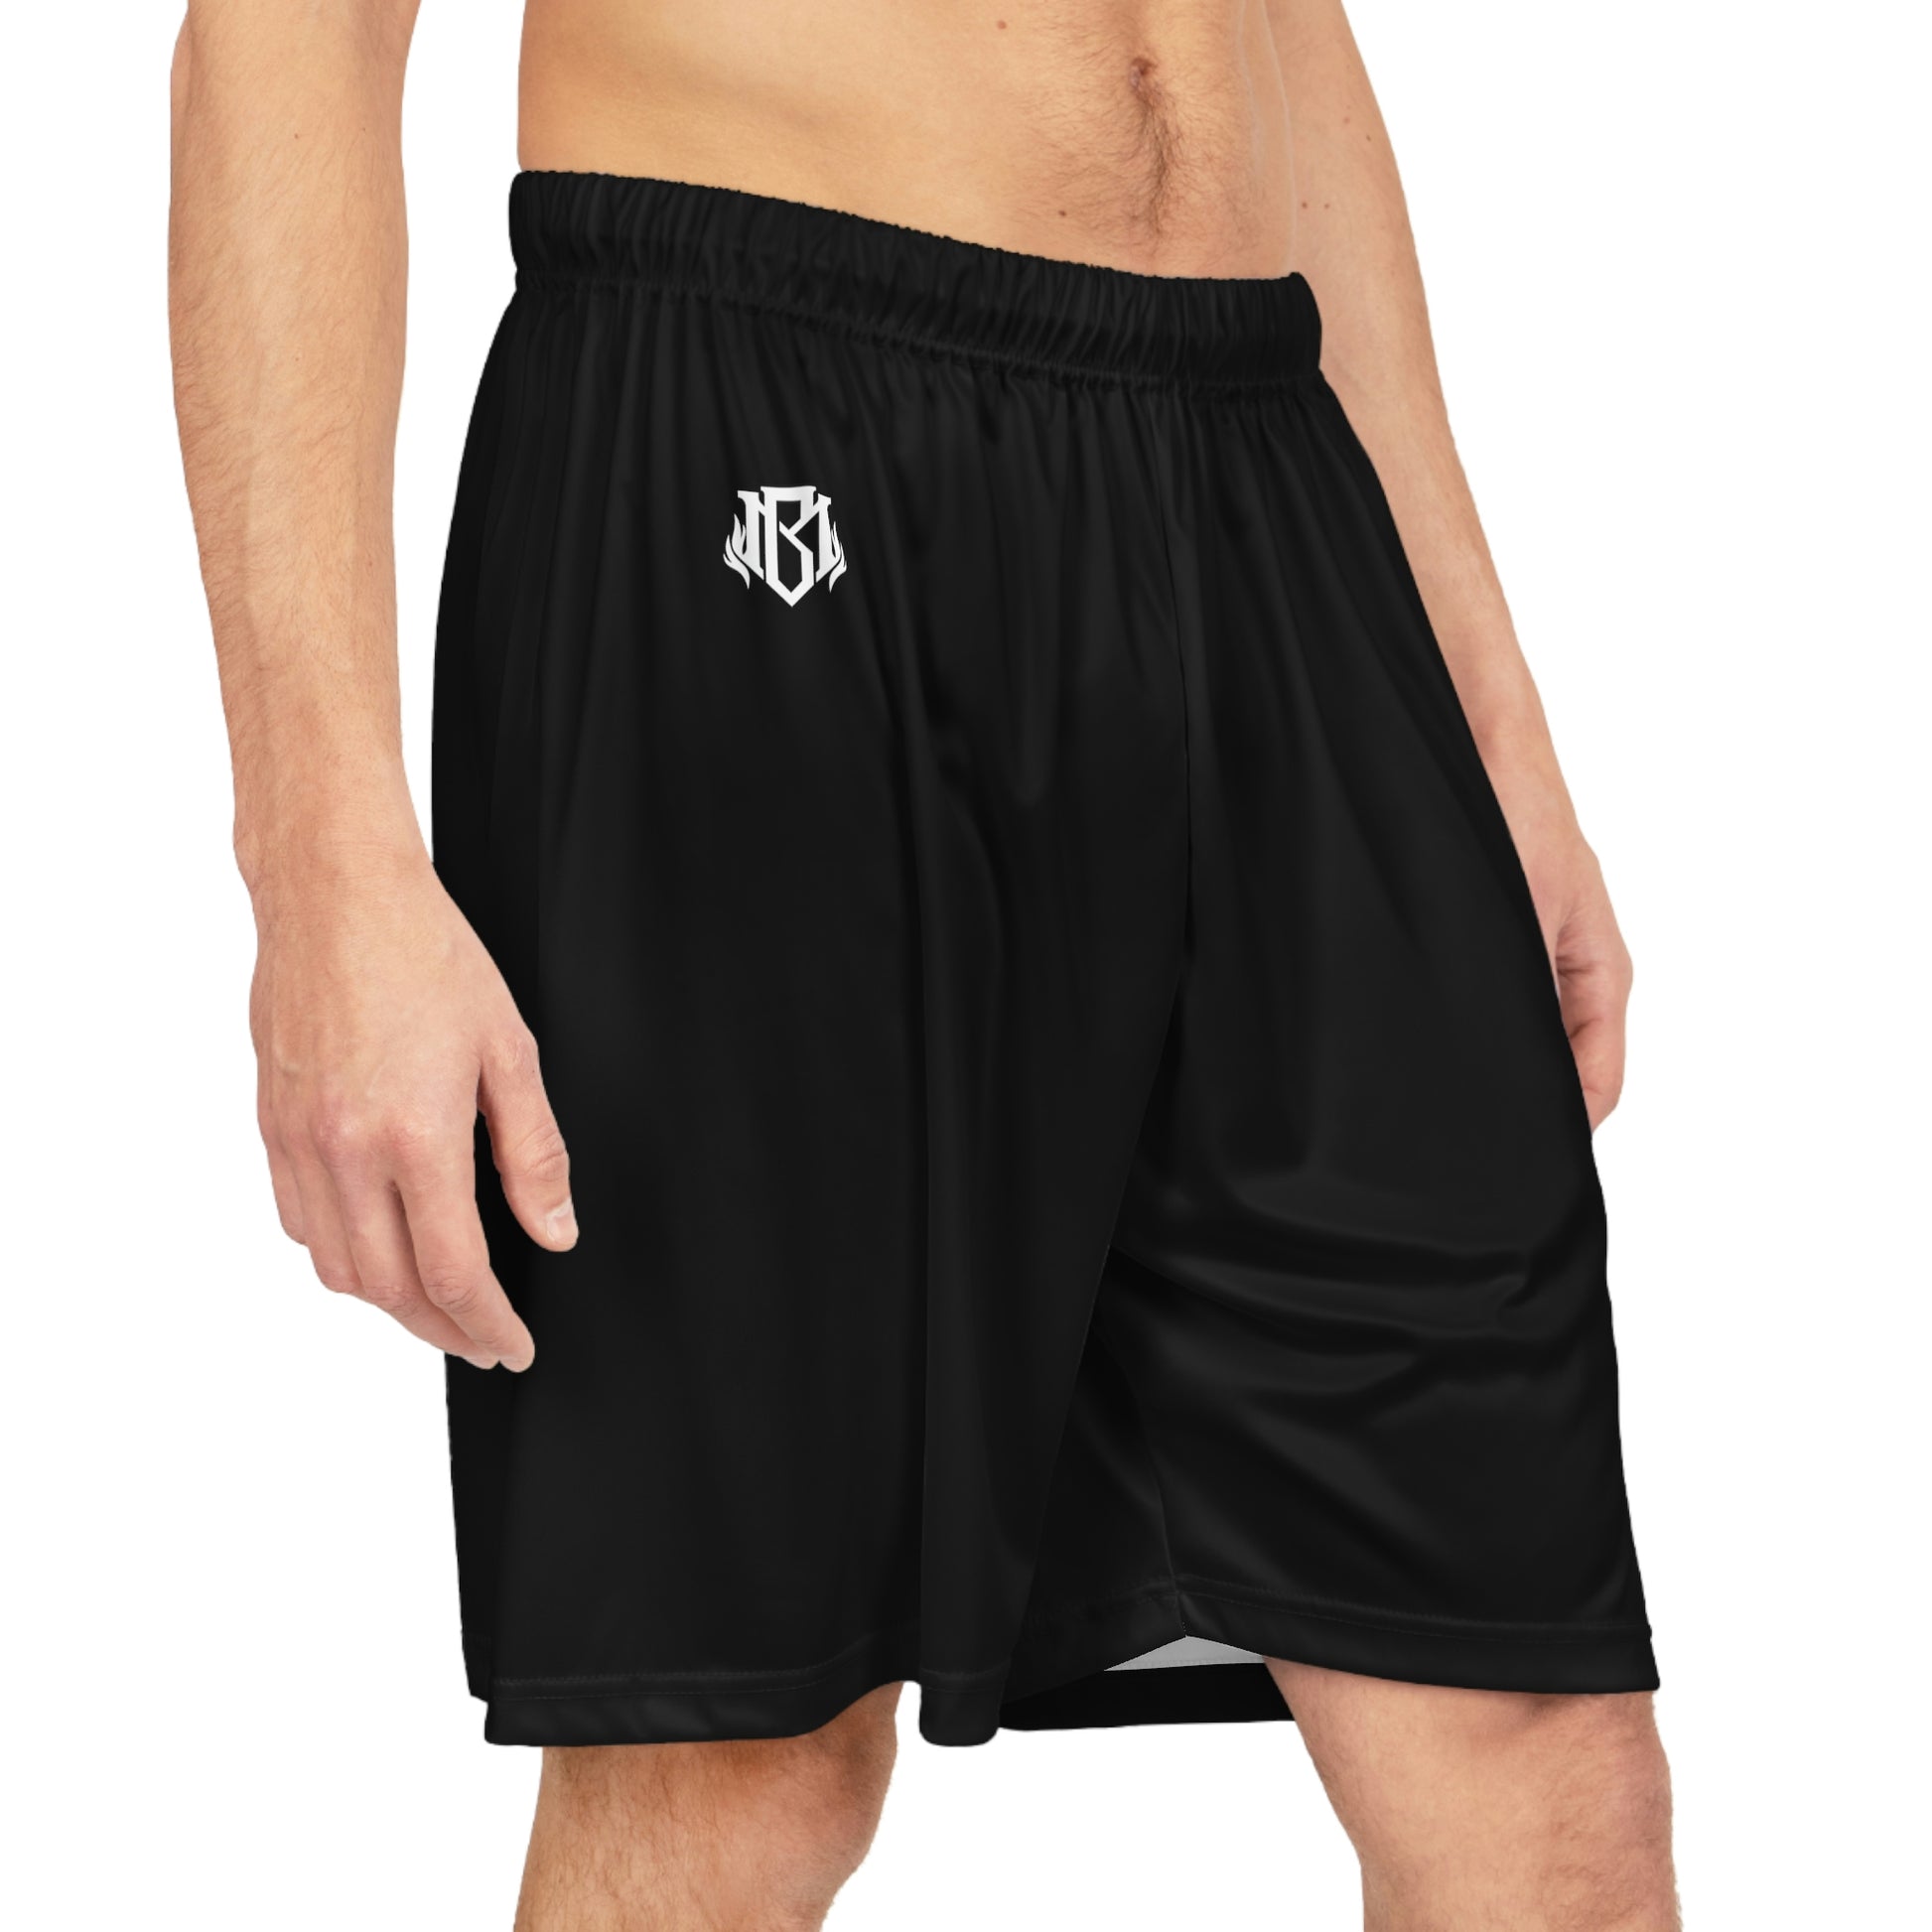 Official Logo Gear Shorts, Basketball Shorts, Gym Shorts